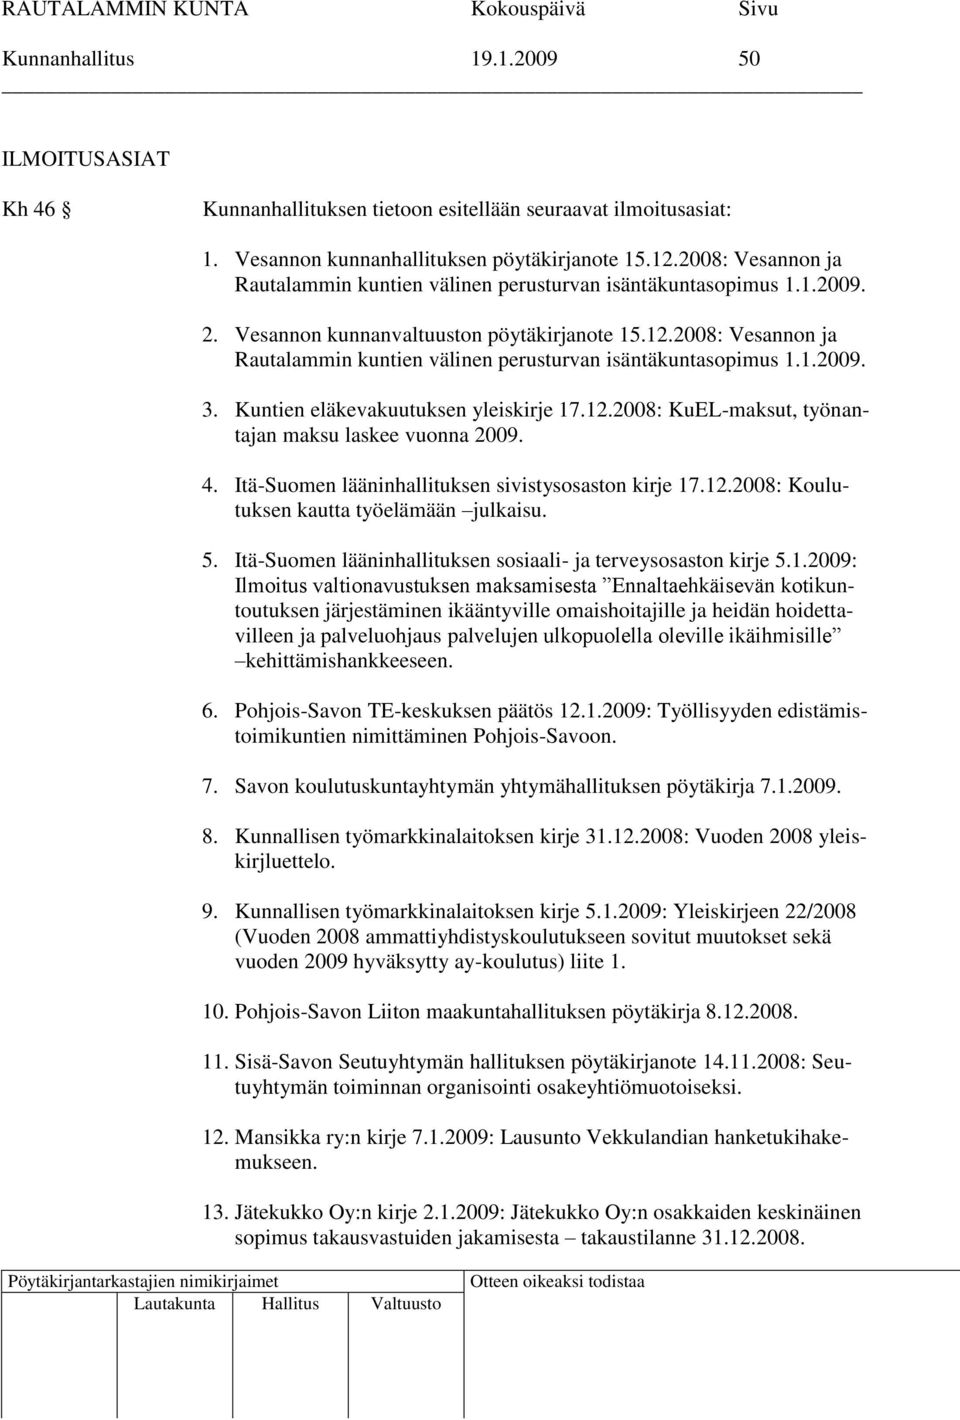 2008: Vesannon ja Rautalammin kuntien välinen perusturvan isäntäkuntasopimus 1.1.2009. 3. Kuntien eläkevakuutuksen yleiskirje 17.12.2008: KuEL-maksut, työnantajan maksu laskee vuonna 2009. 4.